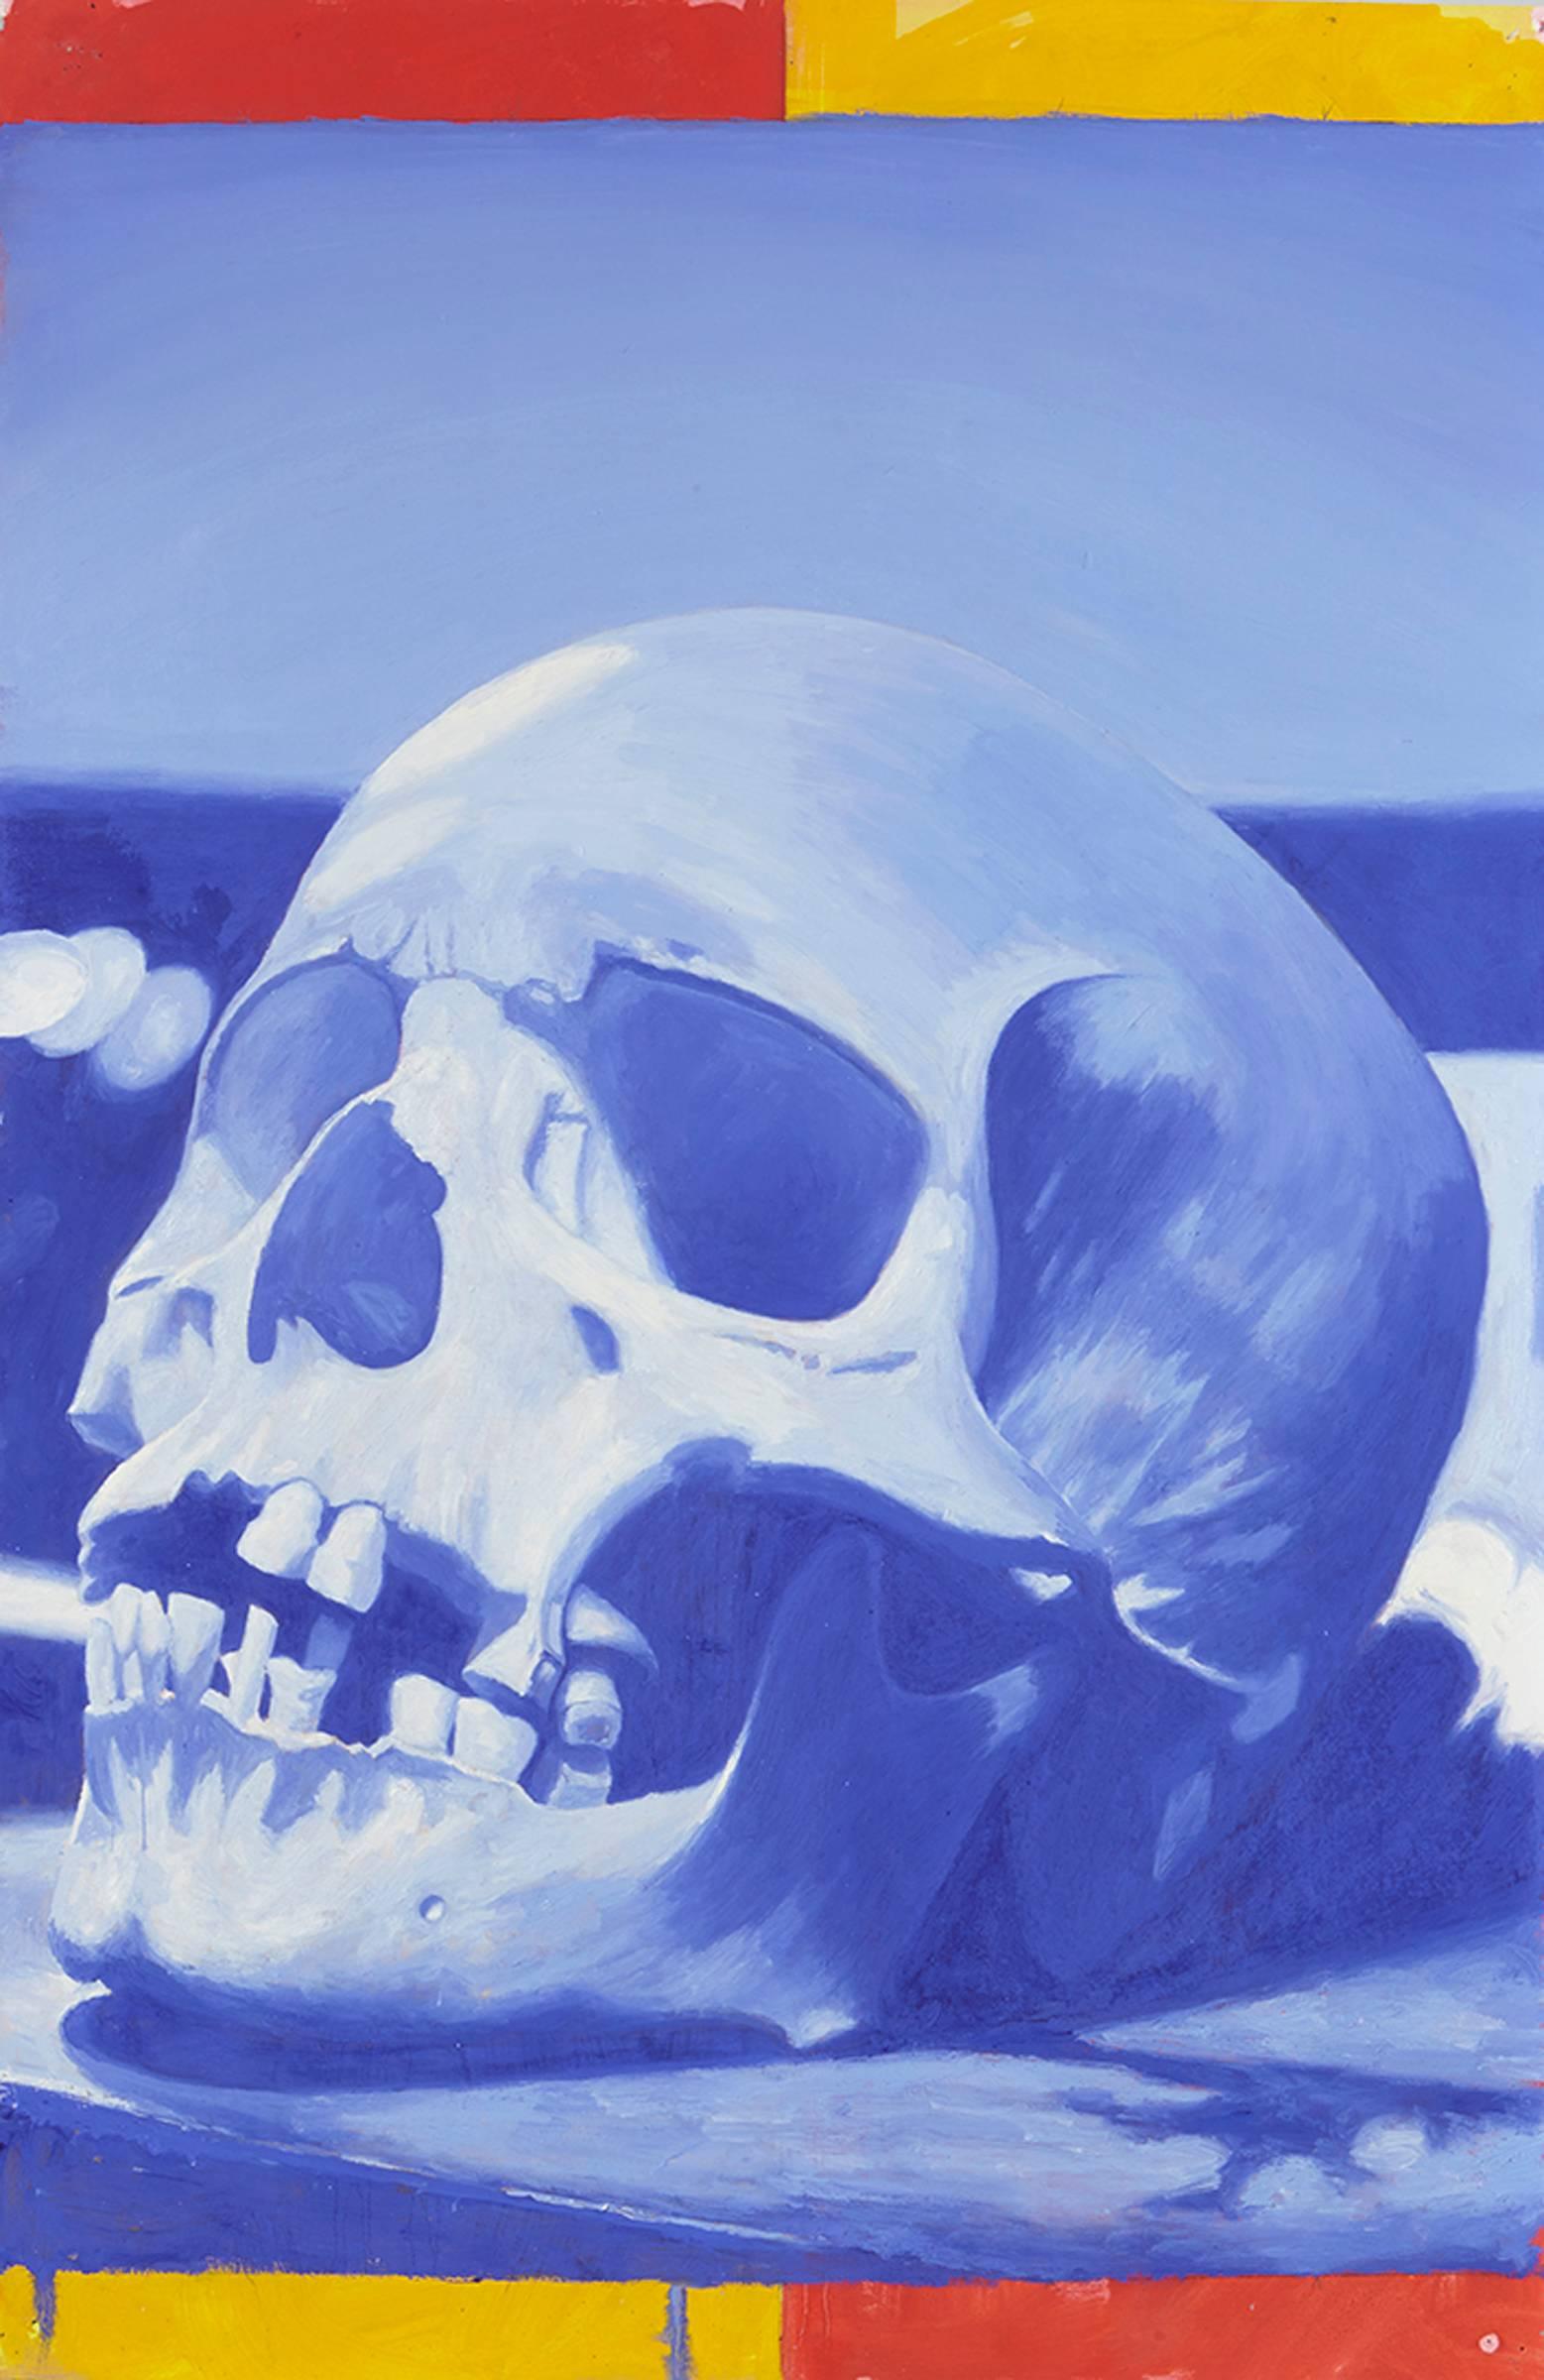 Six Skulls - Brown Still-Life Painting by John Keefer